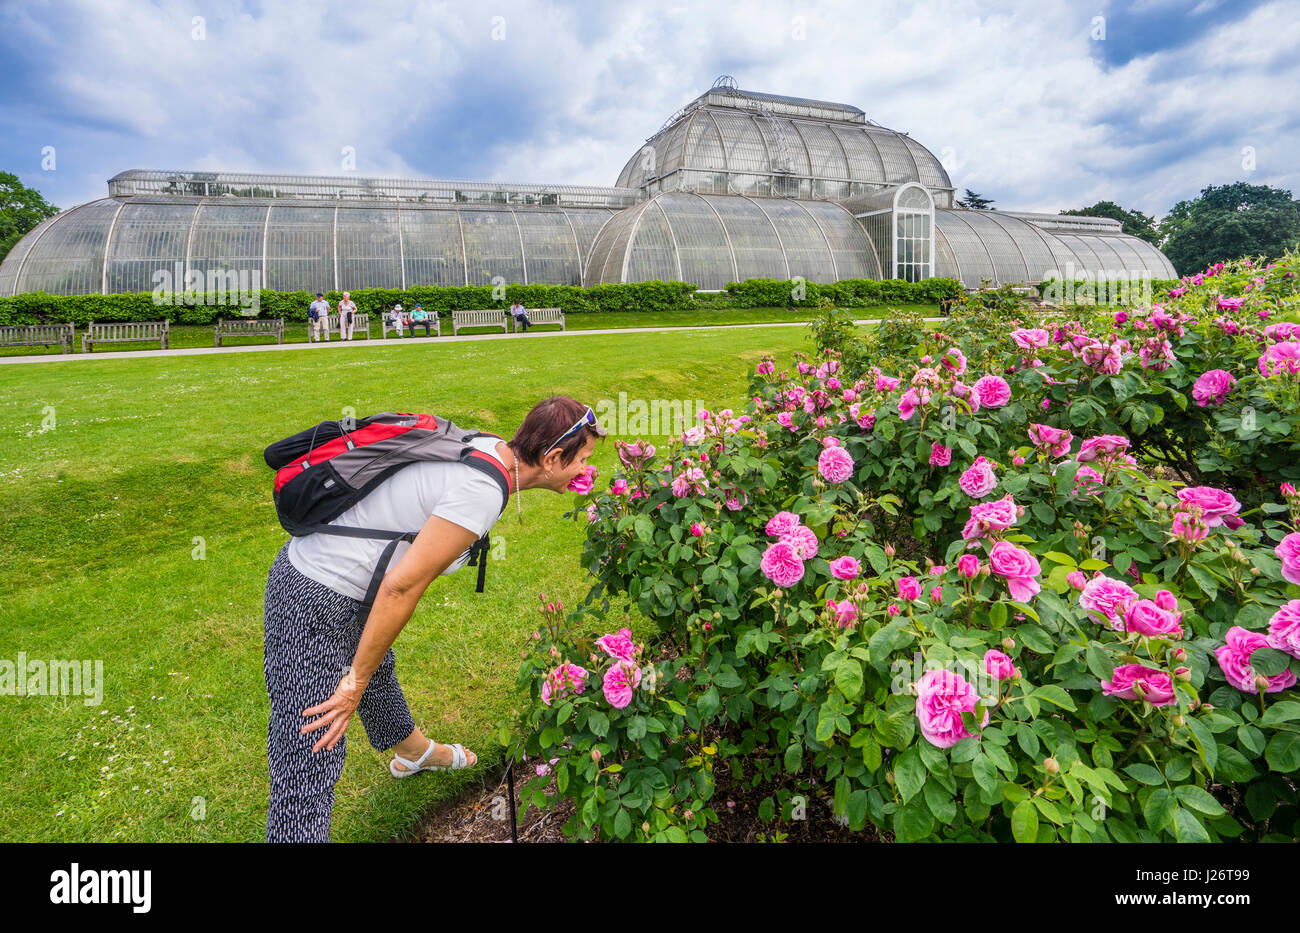 Reino Unido, Inglaterra, Kew Gardens en el London Borough of Richmond upon Thames, oler las rosas en el jardín de rosas con el telón de fondo de la palma Foto de stock